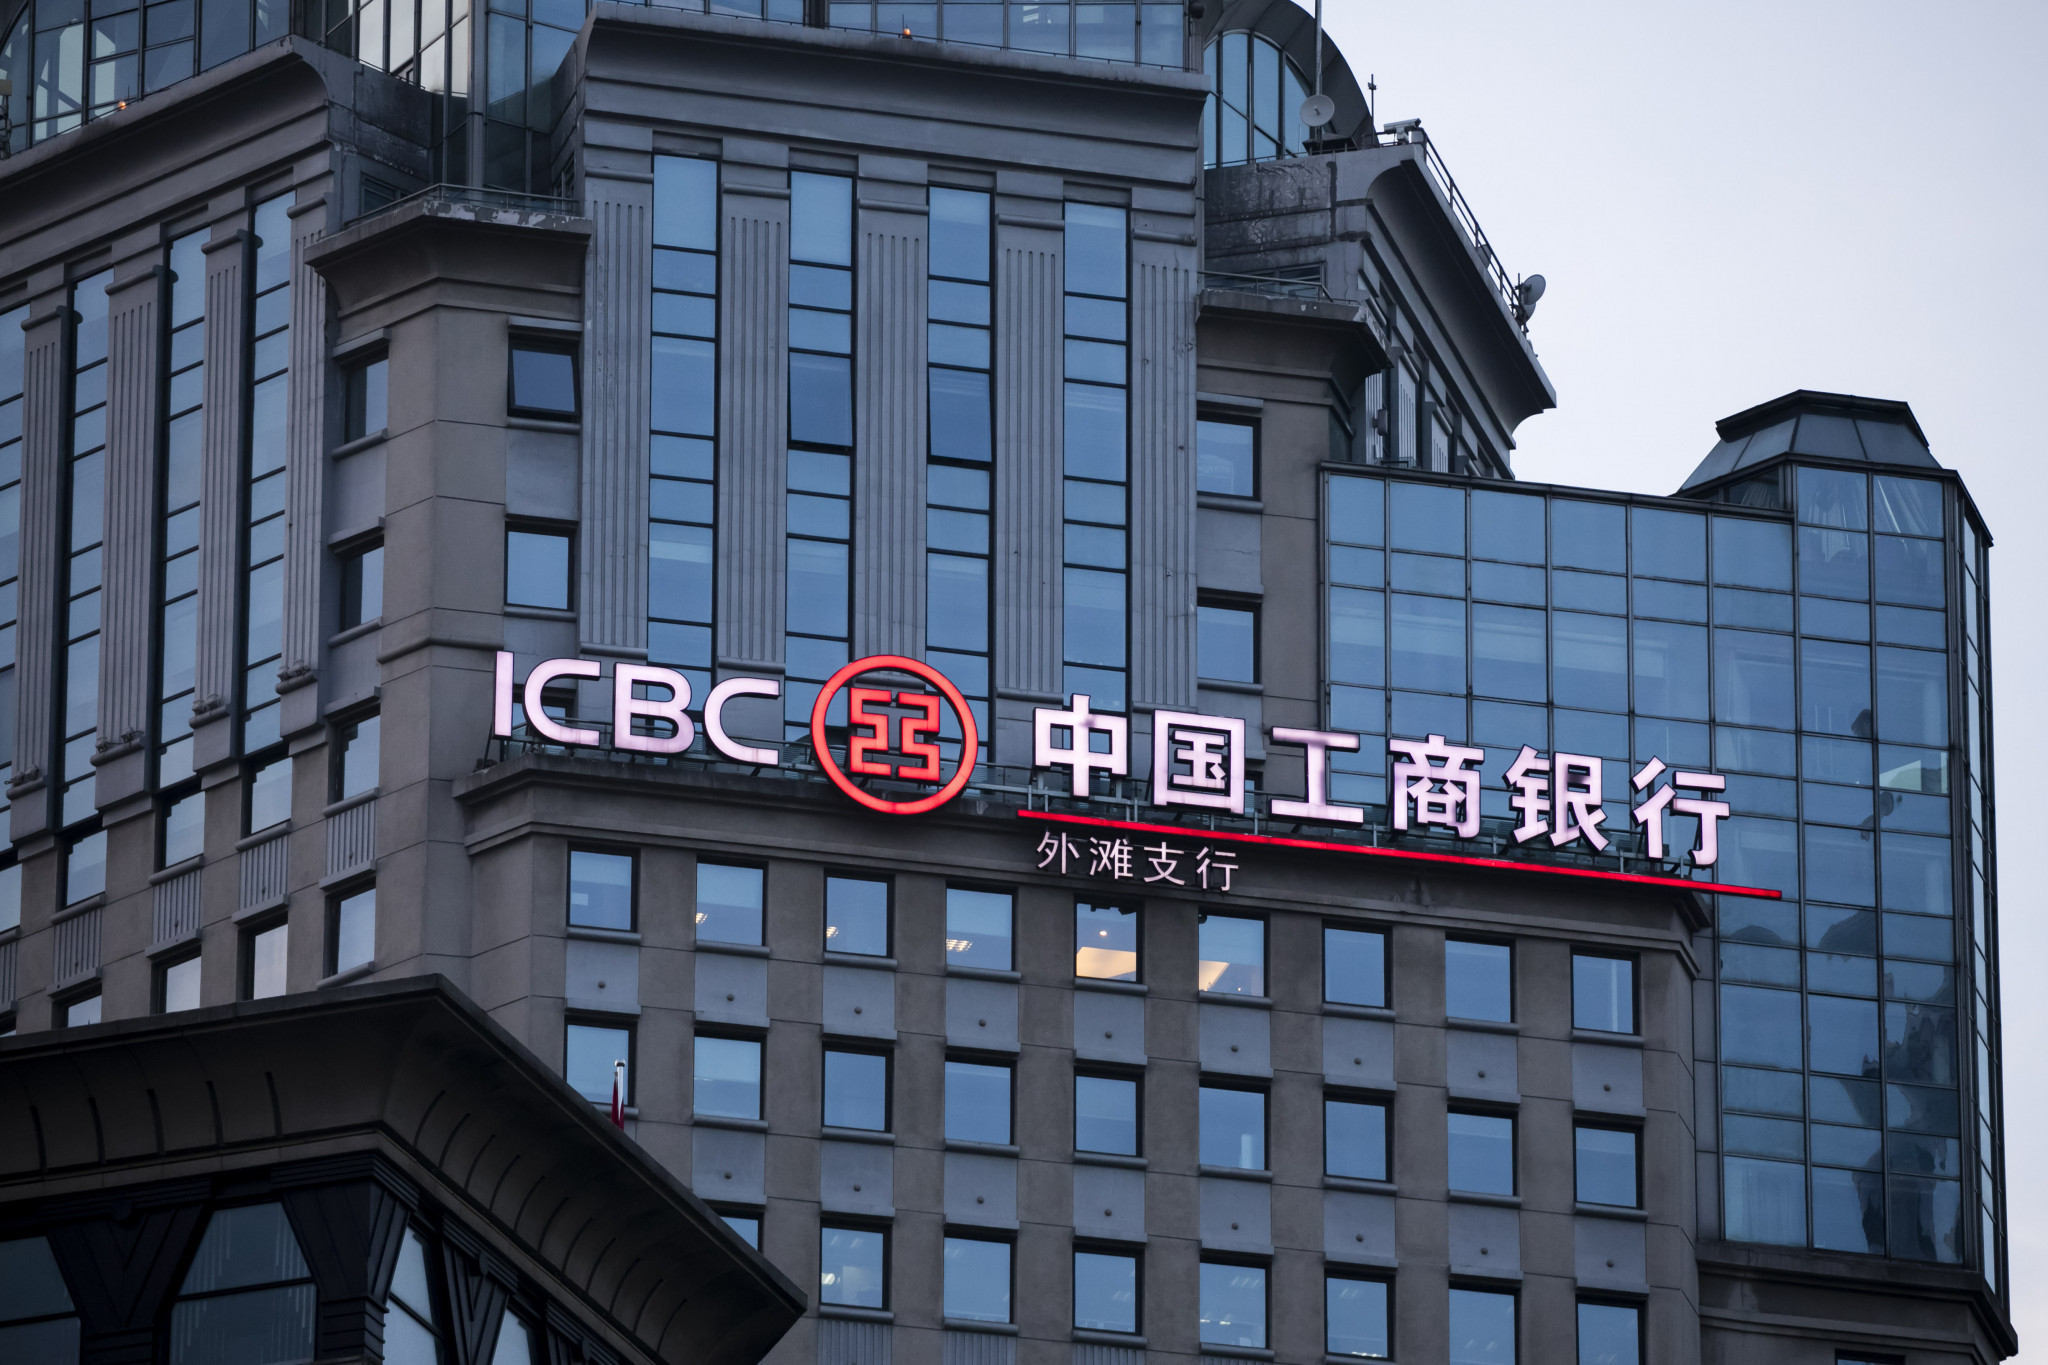 China bank. Промышленный и коммерческий банк Китая (ICBC). Банк ICBC Китай. Industrial and commercial Bank of China (ICBC) ("промышленно-торговый банк Китая"). ICBC Bank of China в Китае.